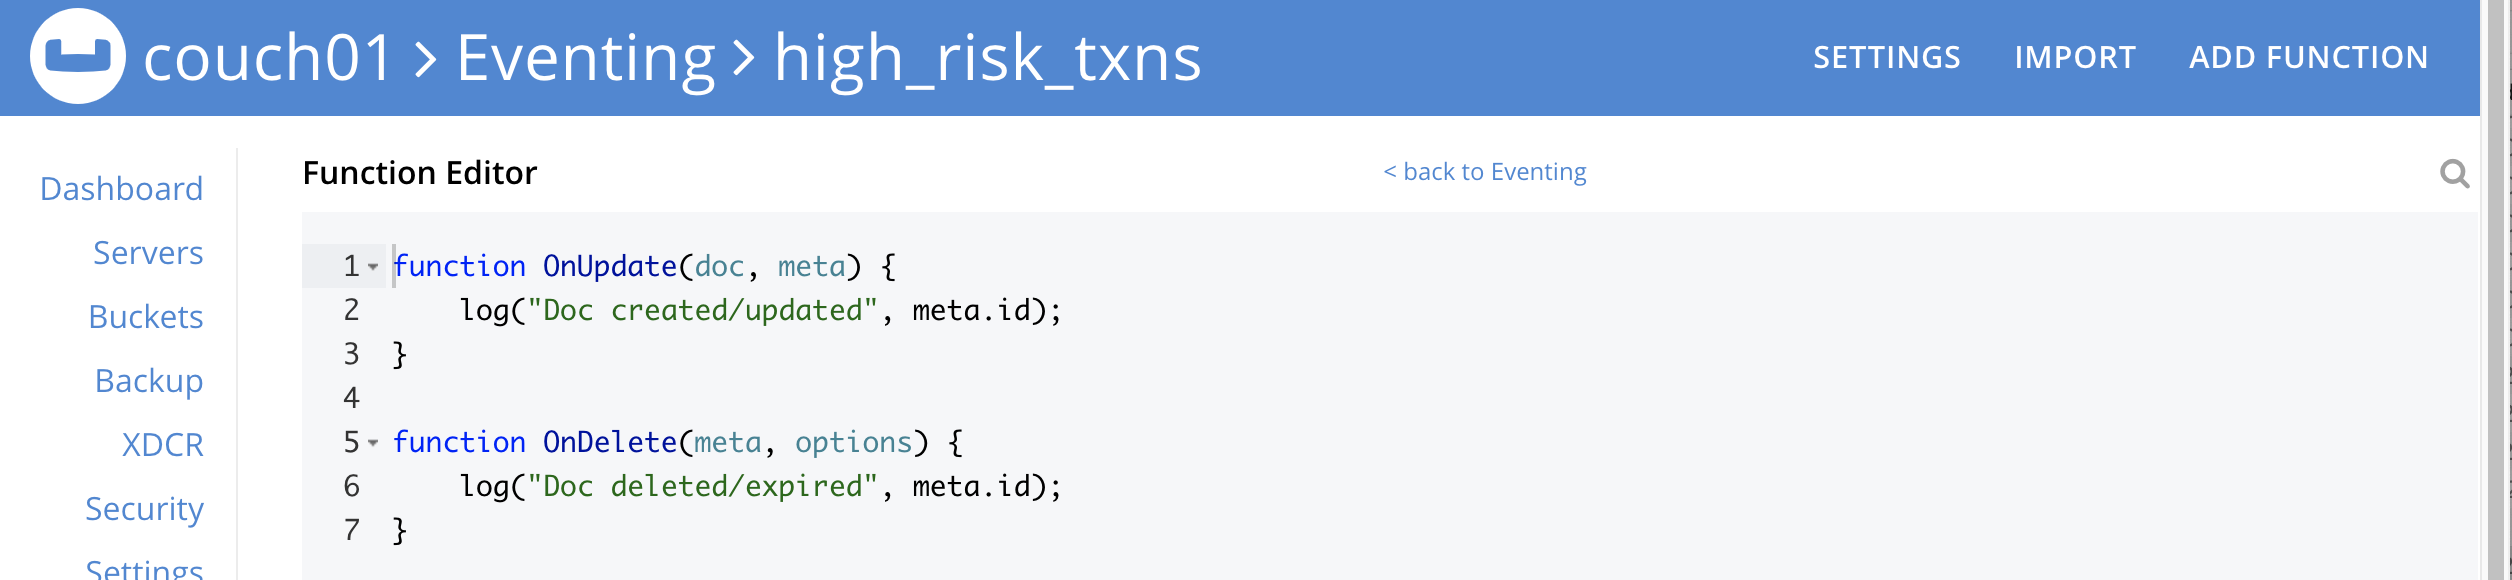 high risk txns 02 default code